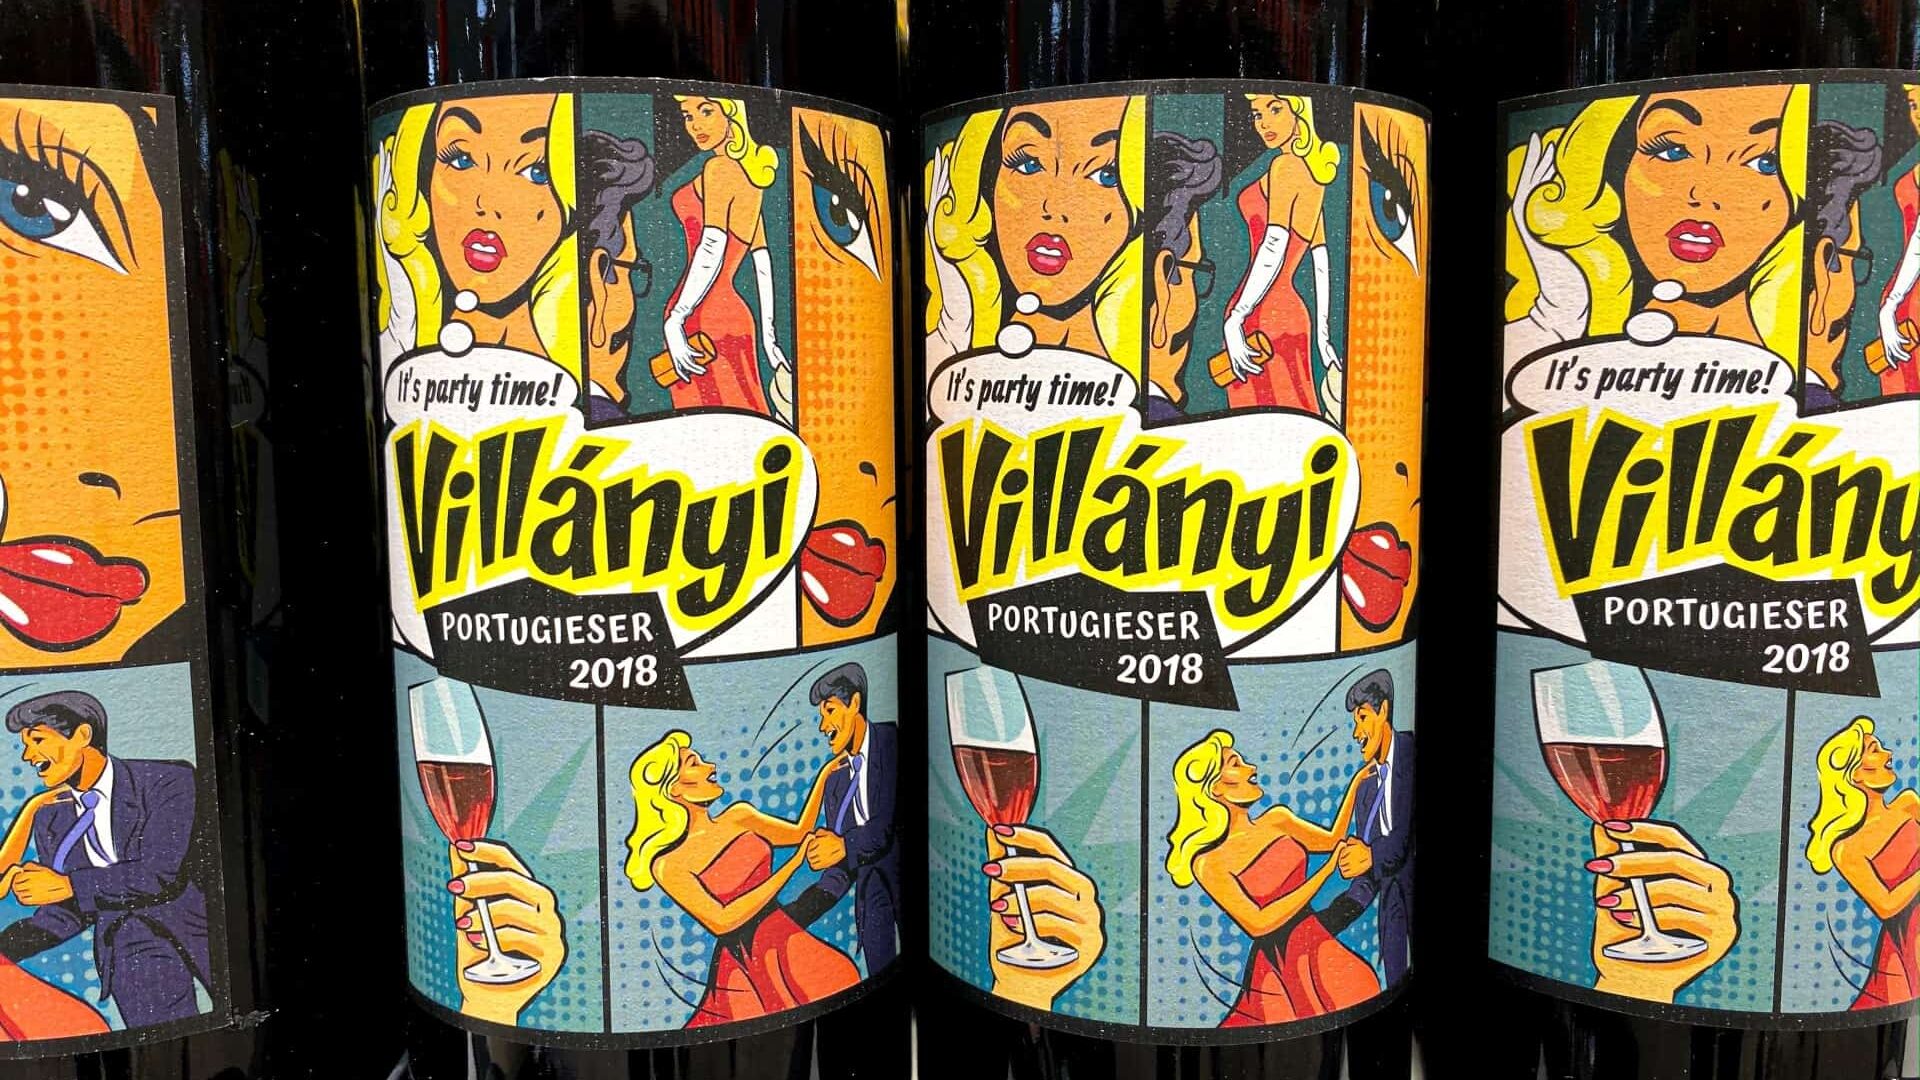 Villanyi wines